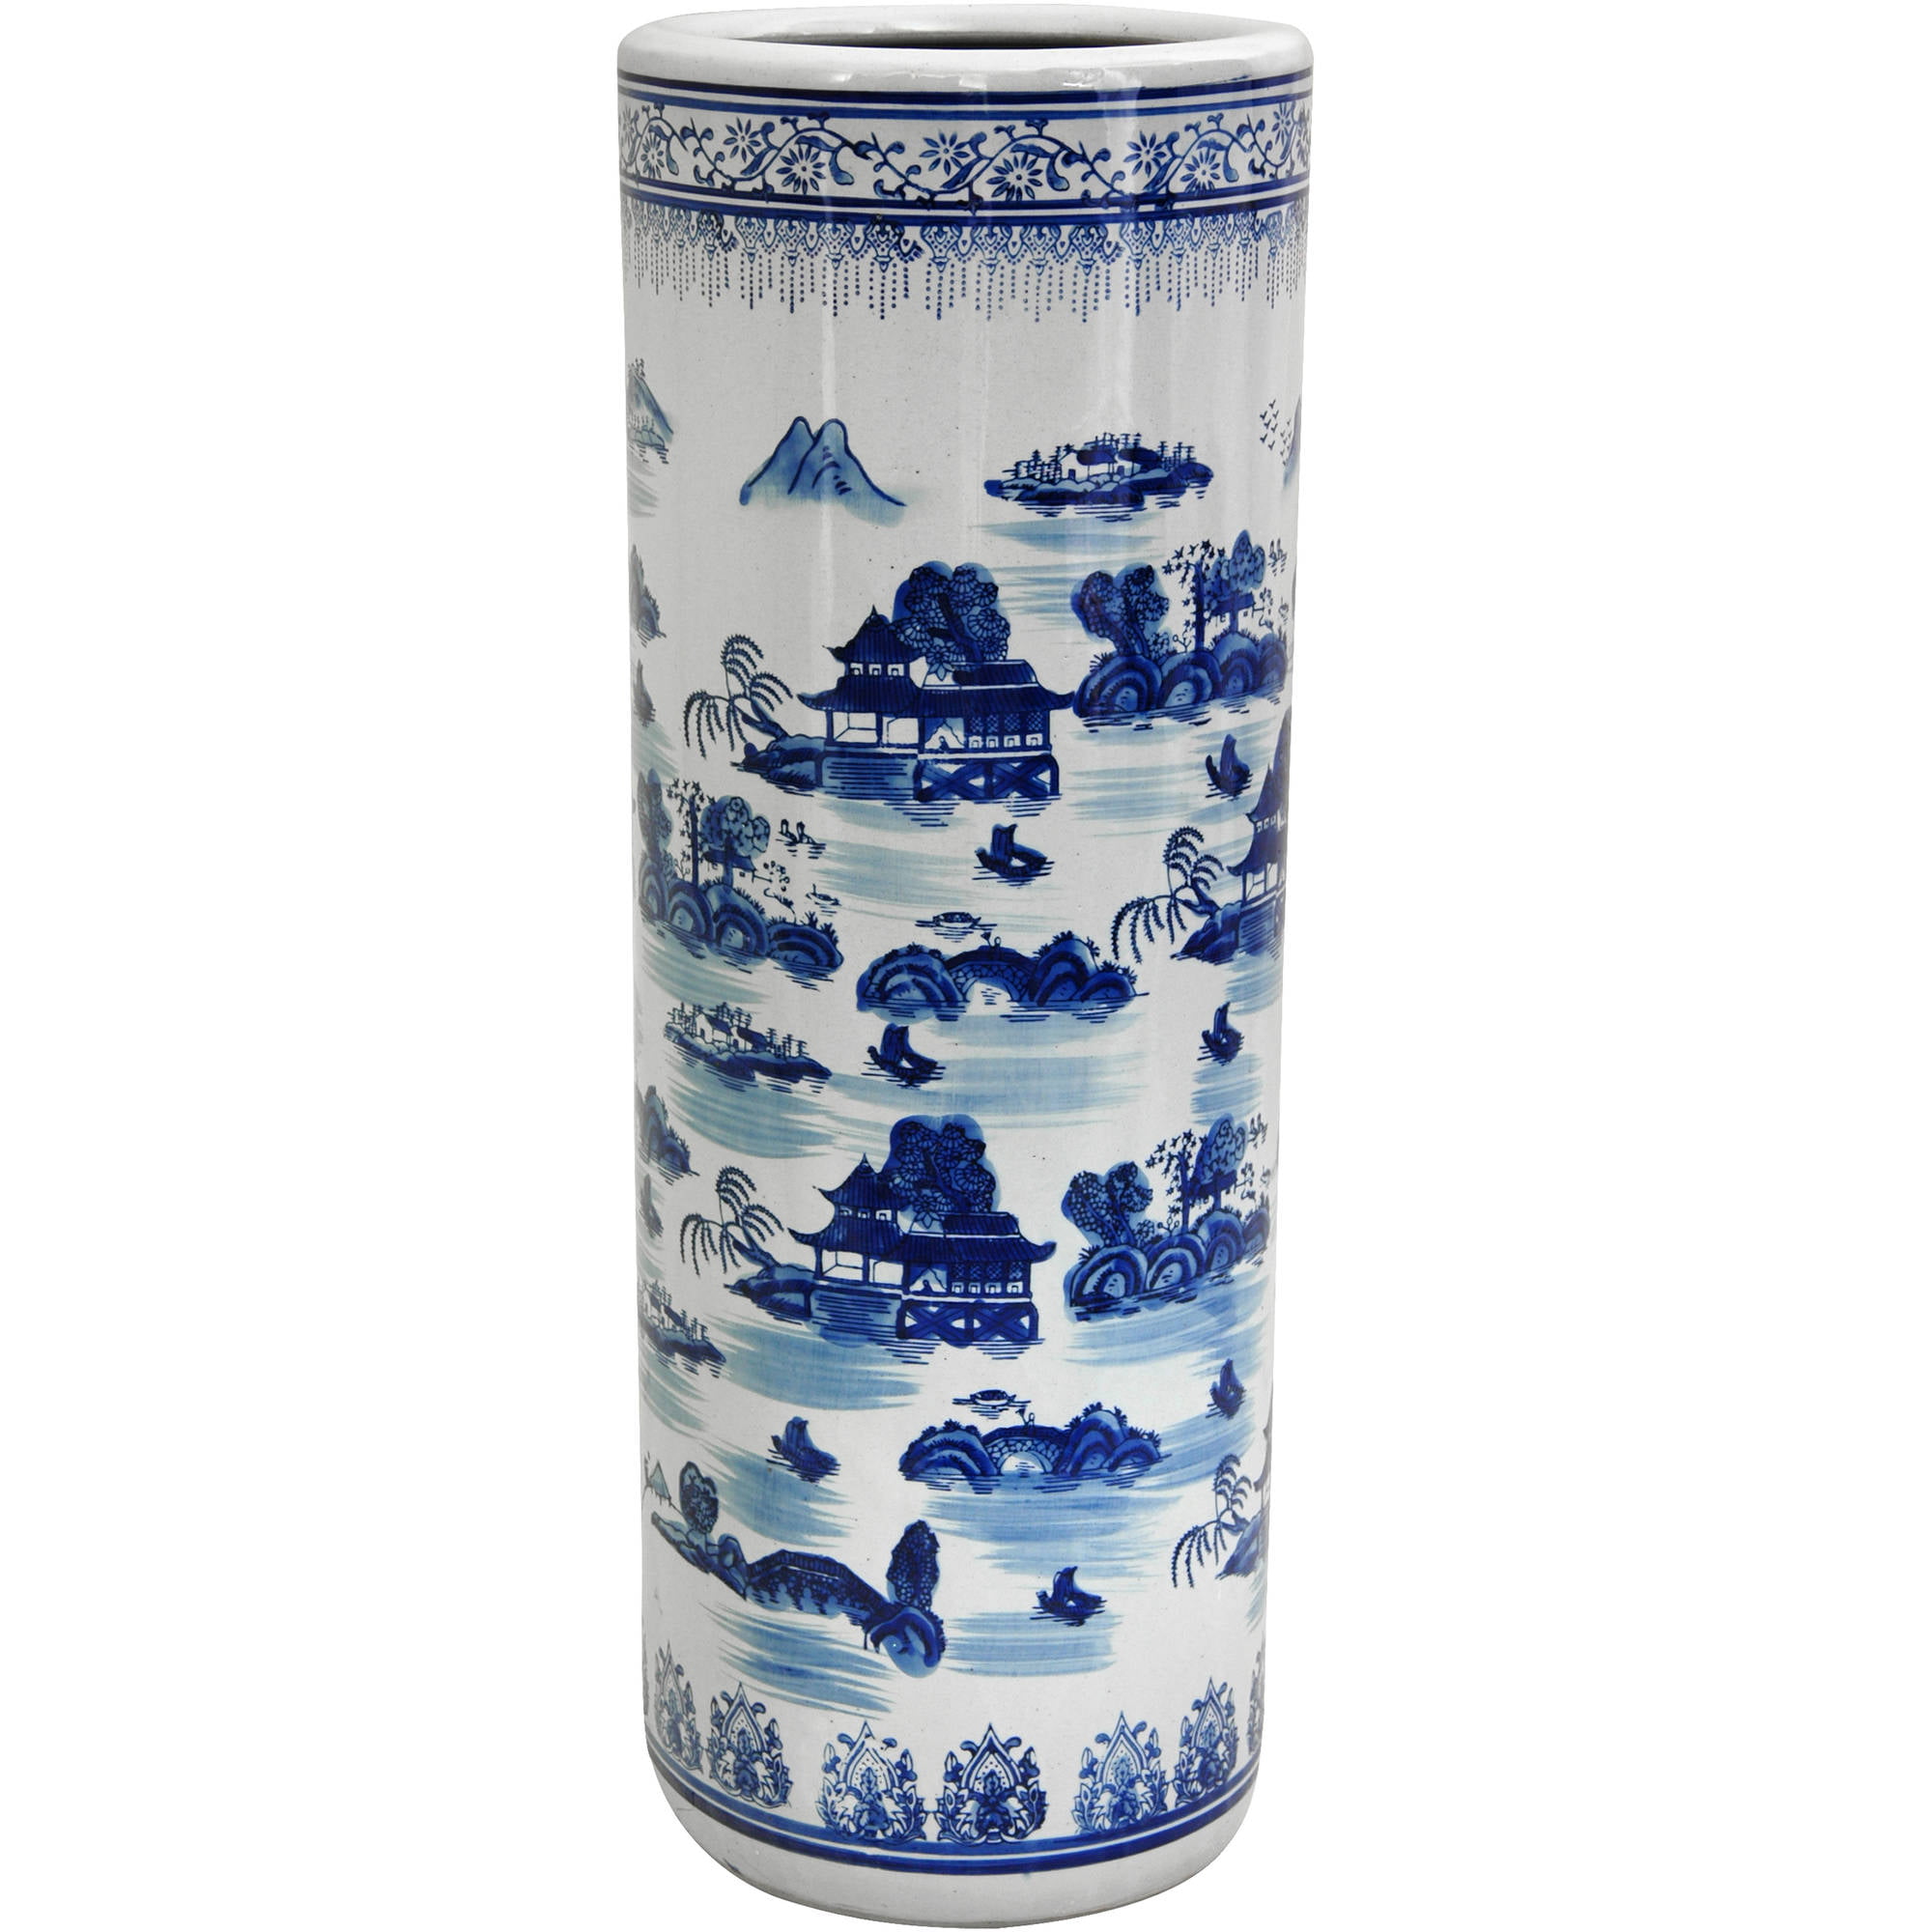 Geko Vintage Blue & White Bird Design Ceramic Umbrella Stand 